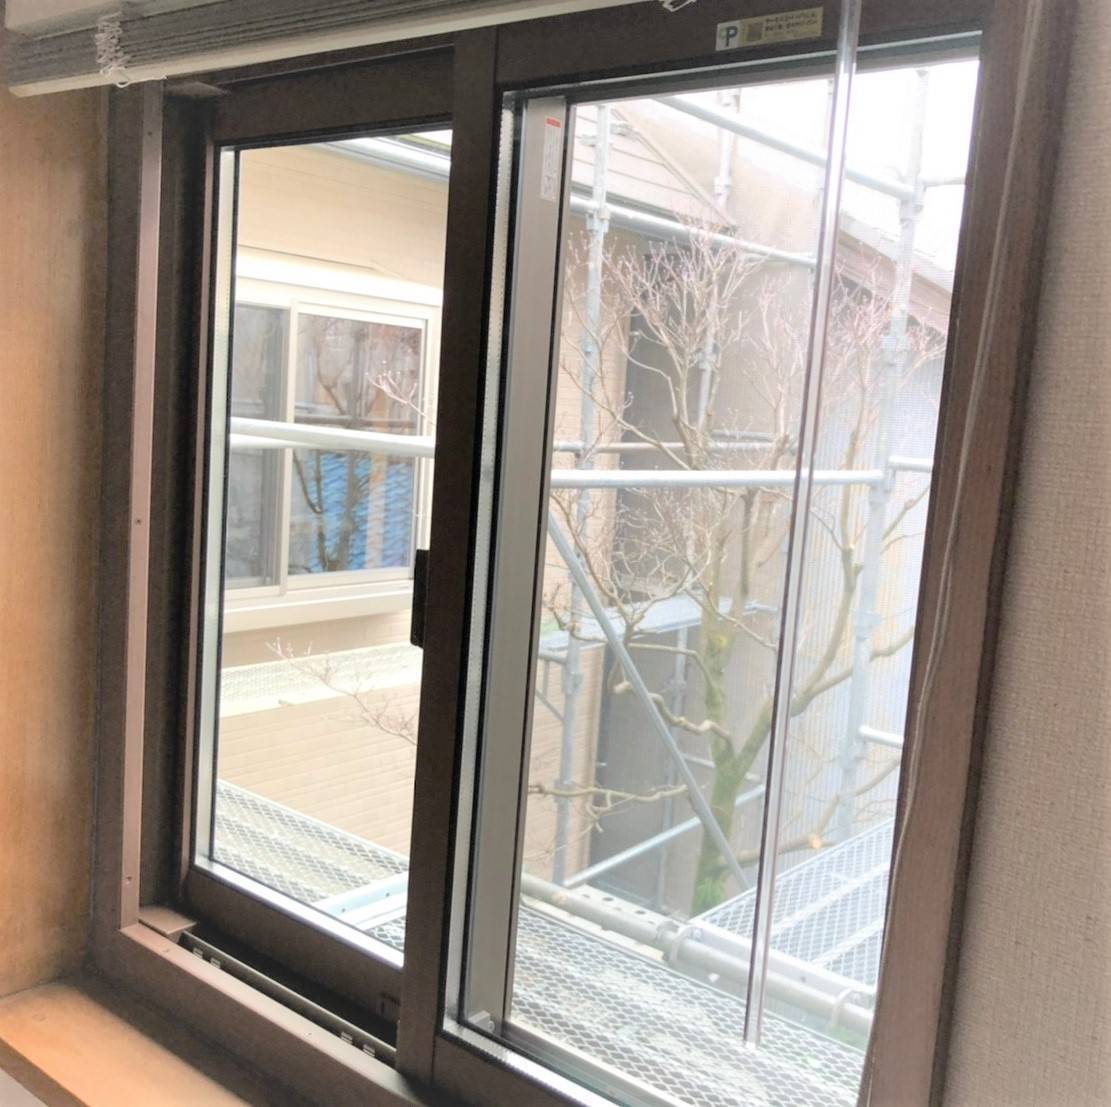 窓工房テラムラの部屋の窓が寒いです。窓に問題があるのでしょうか。の施工後の写真1